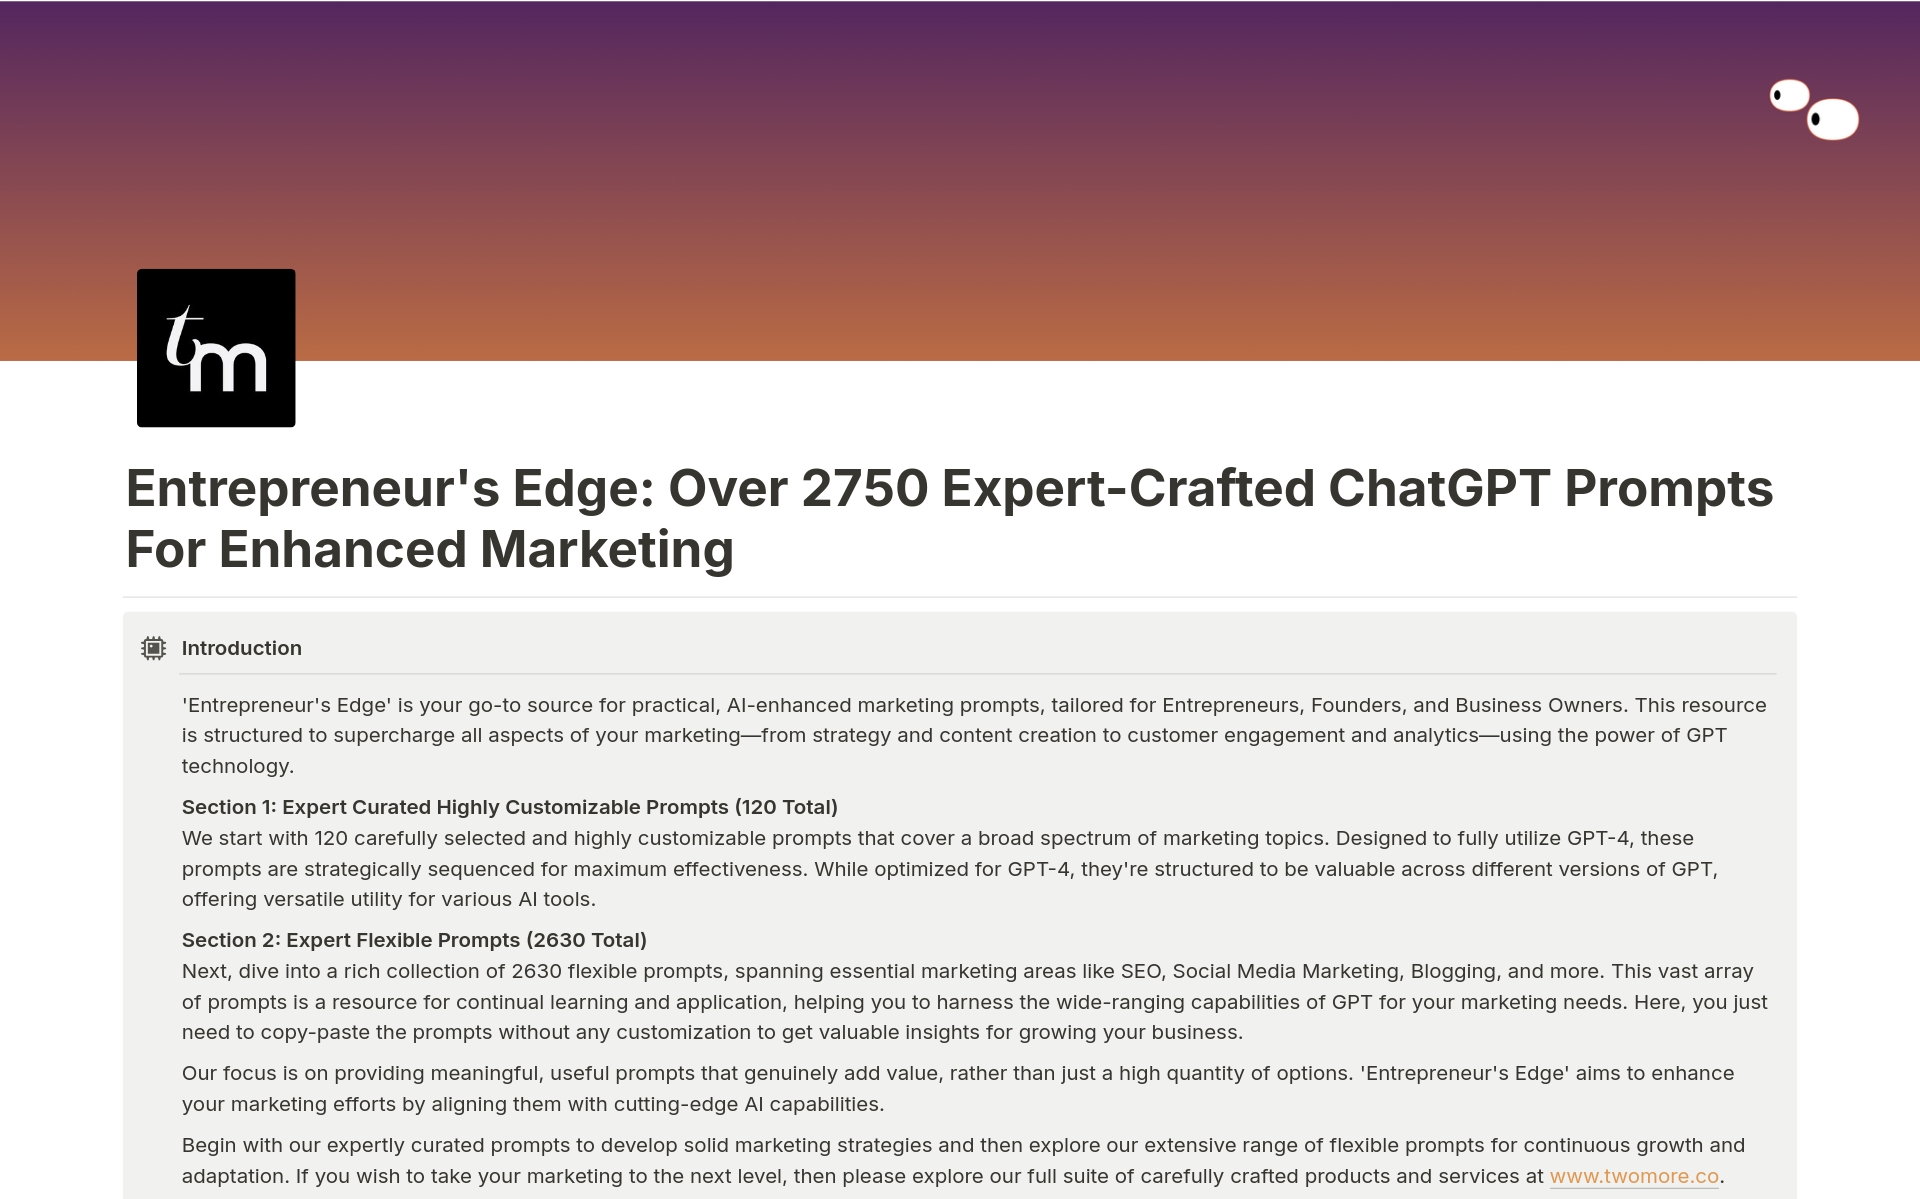 Uma prévia do modelo para Expert-Crafted Marketing Prompts for ChatGPT 